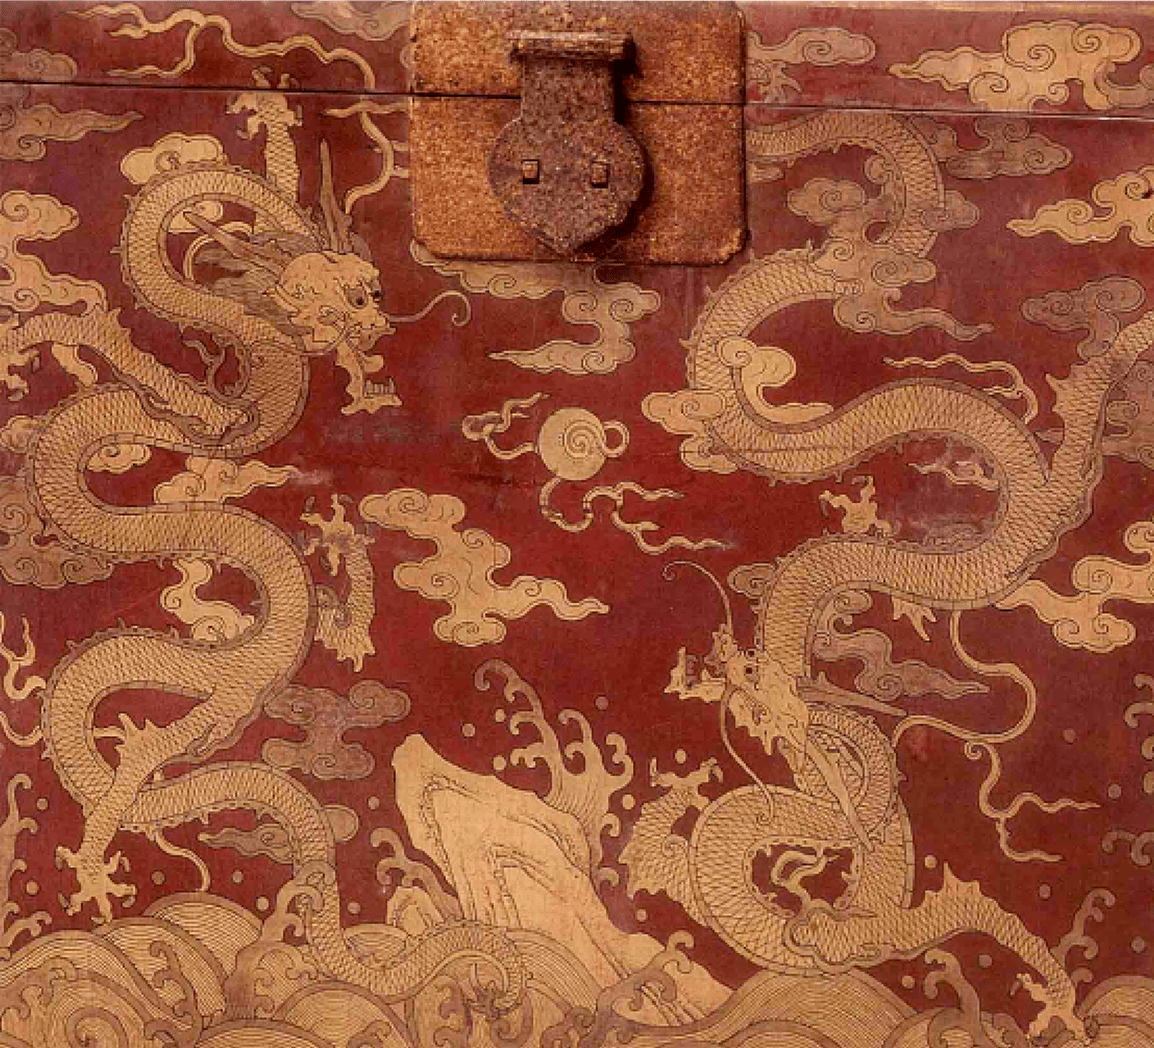 原创故宫文化经典之彩绘家具,皇帝的藏宝箱,箱子就是宝贝